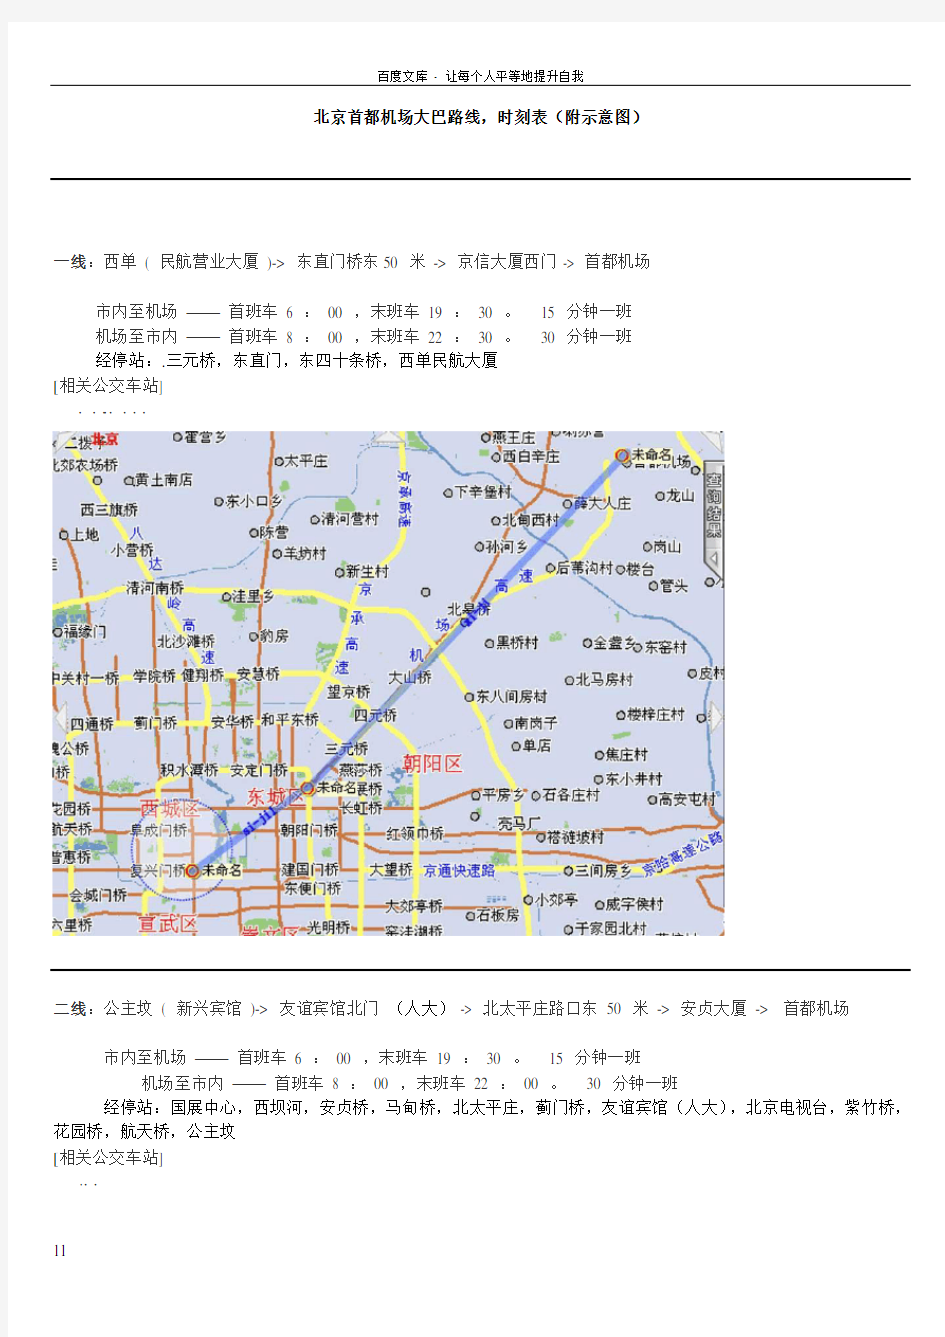 北京首都机场大巴路线时刻表附图及站点